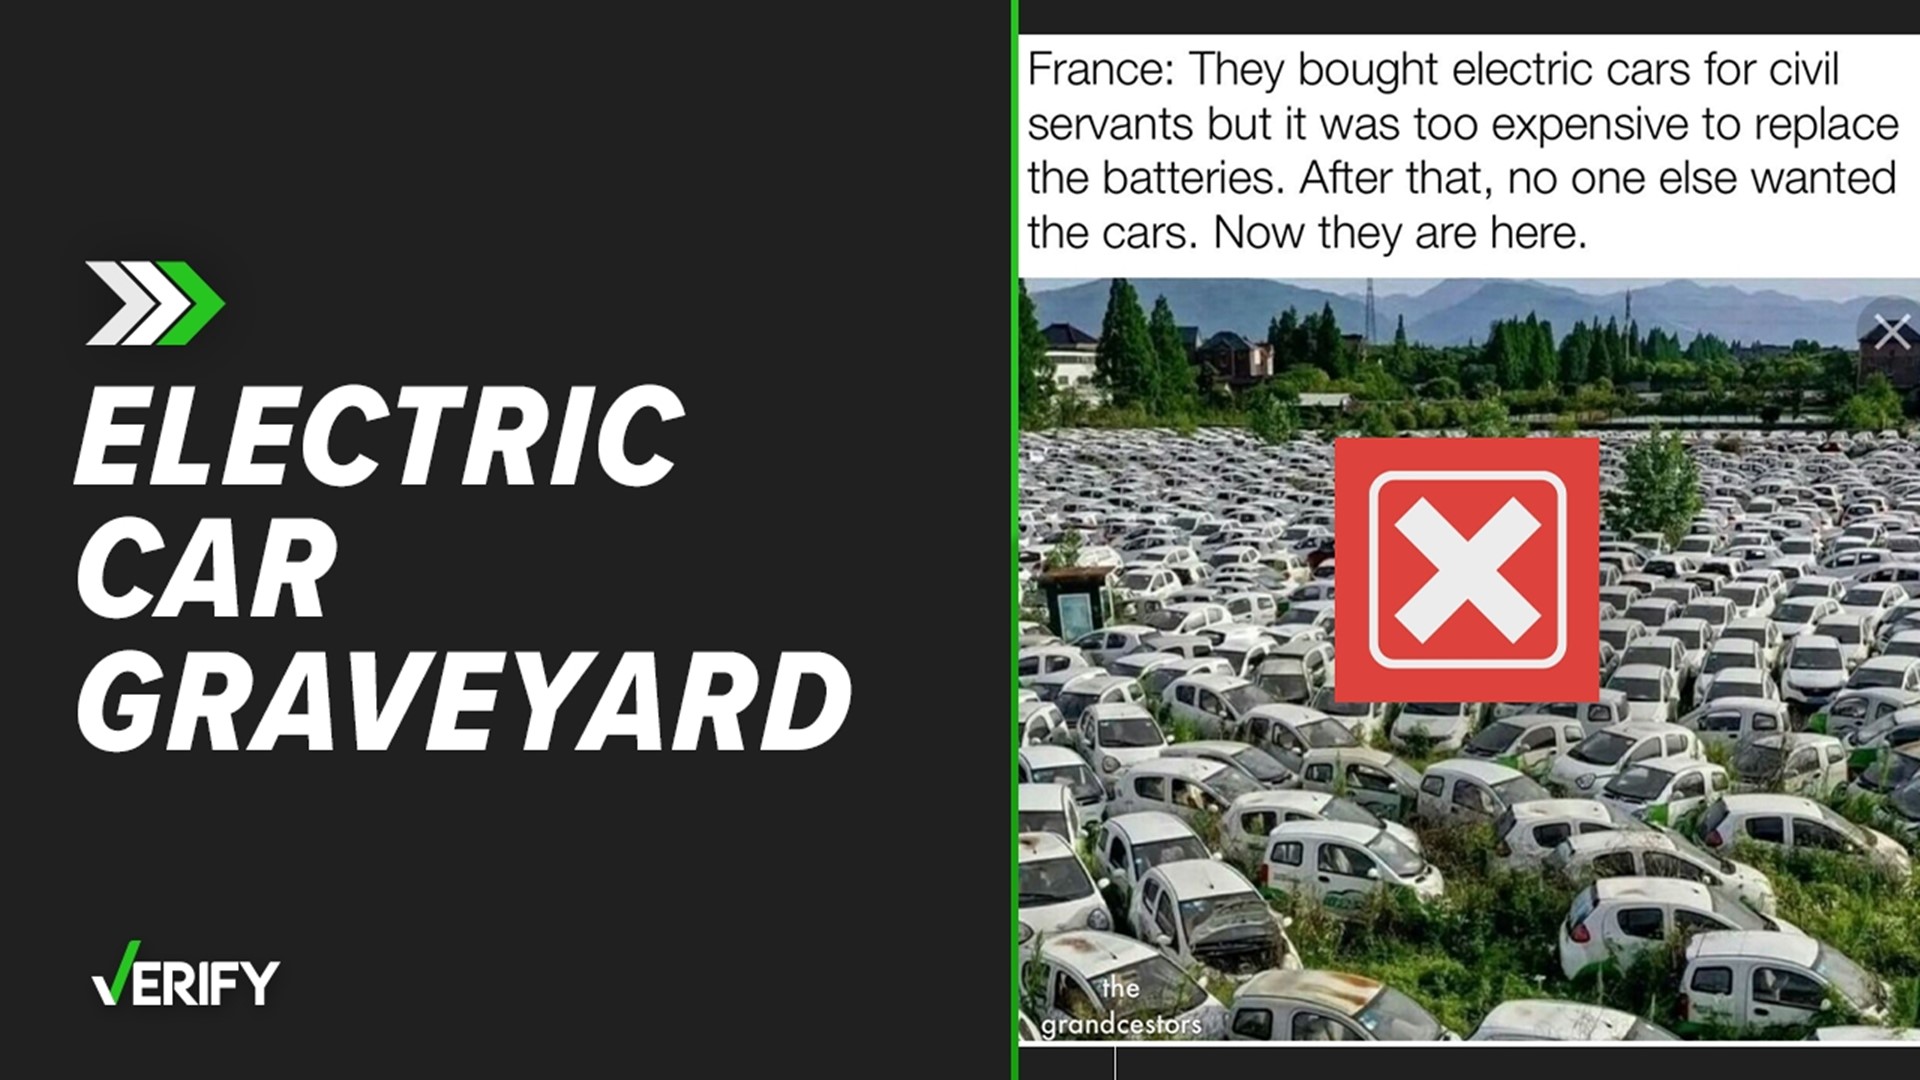 Factchecking claims about Paris electric car graveyards